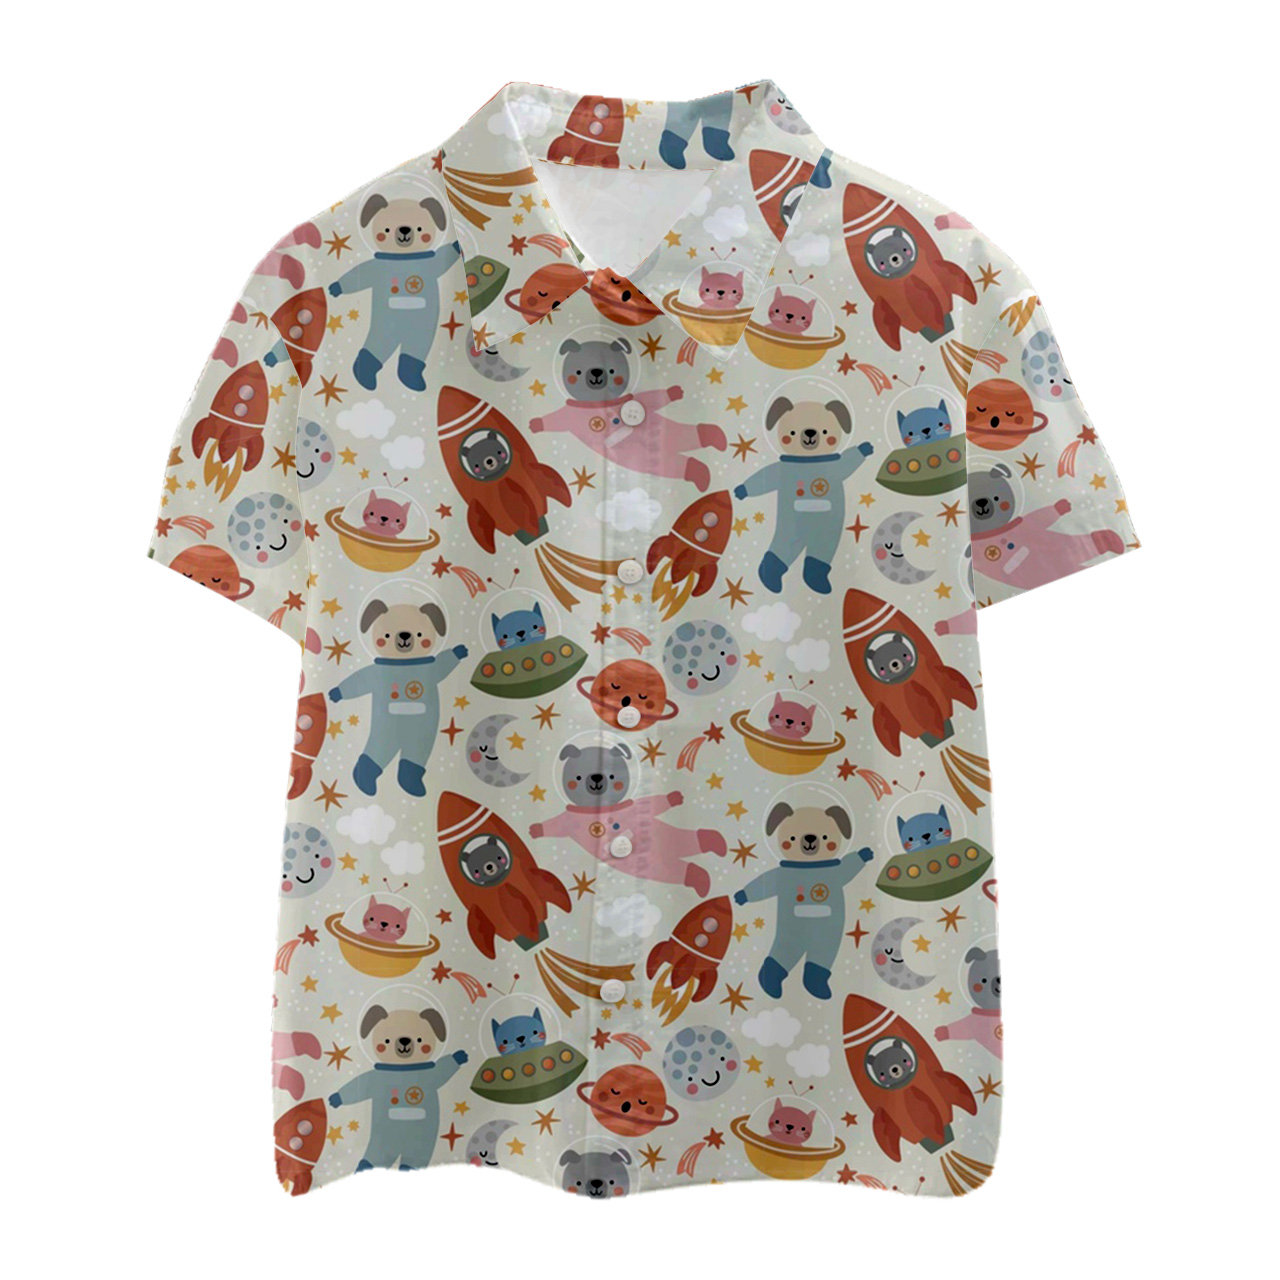 Bear Astronaut Kids Button Shirt